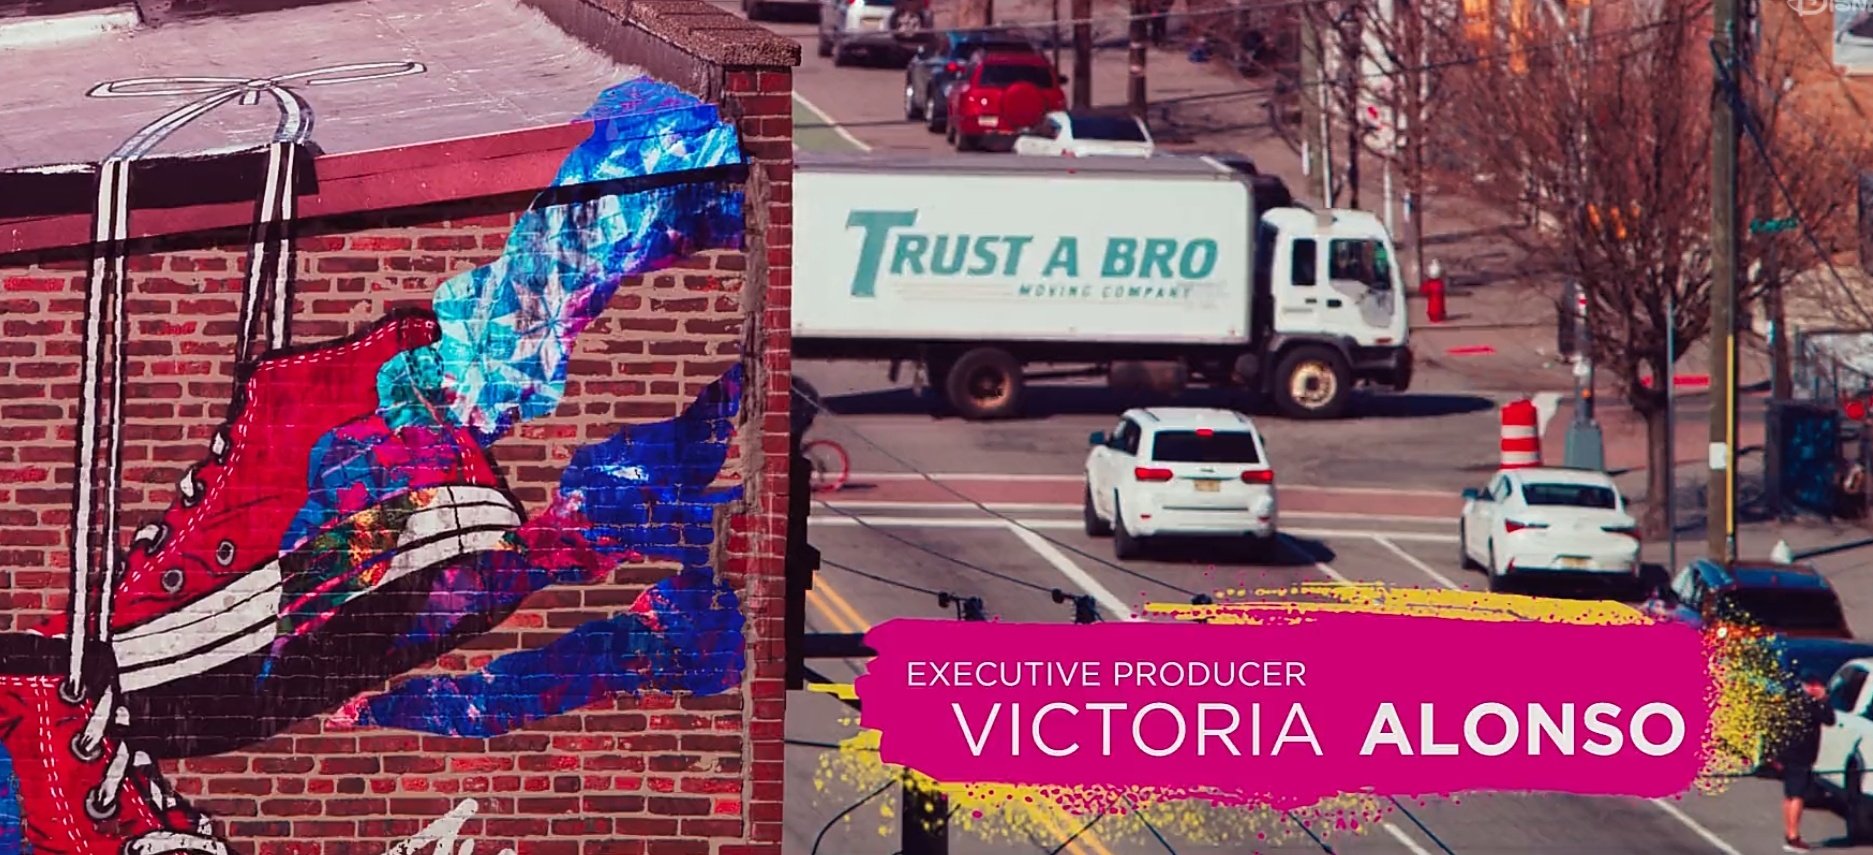 Caminhão da "Trust a Bro" aparece nos créditos animados de "Ms. Marvel" (Imagem: Reprodução/Marvel).